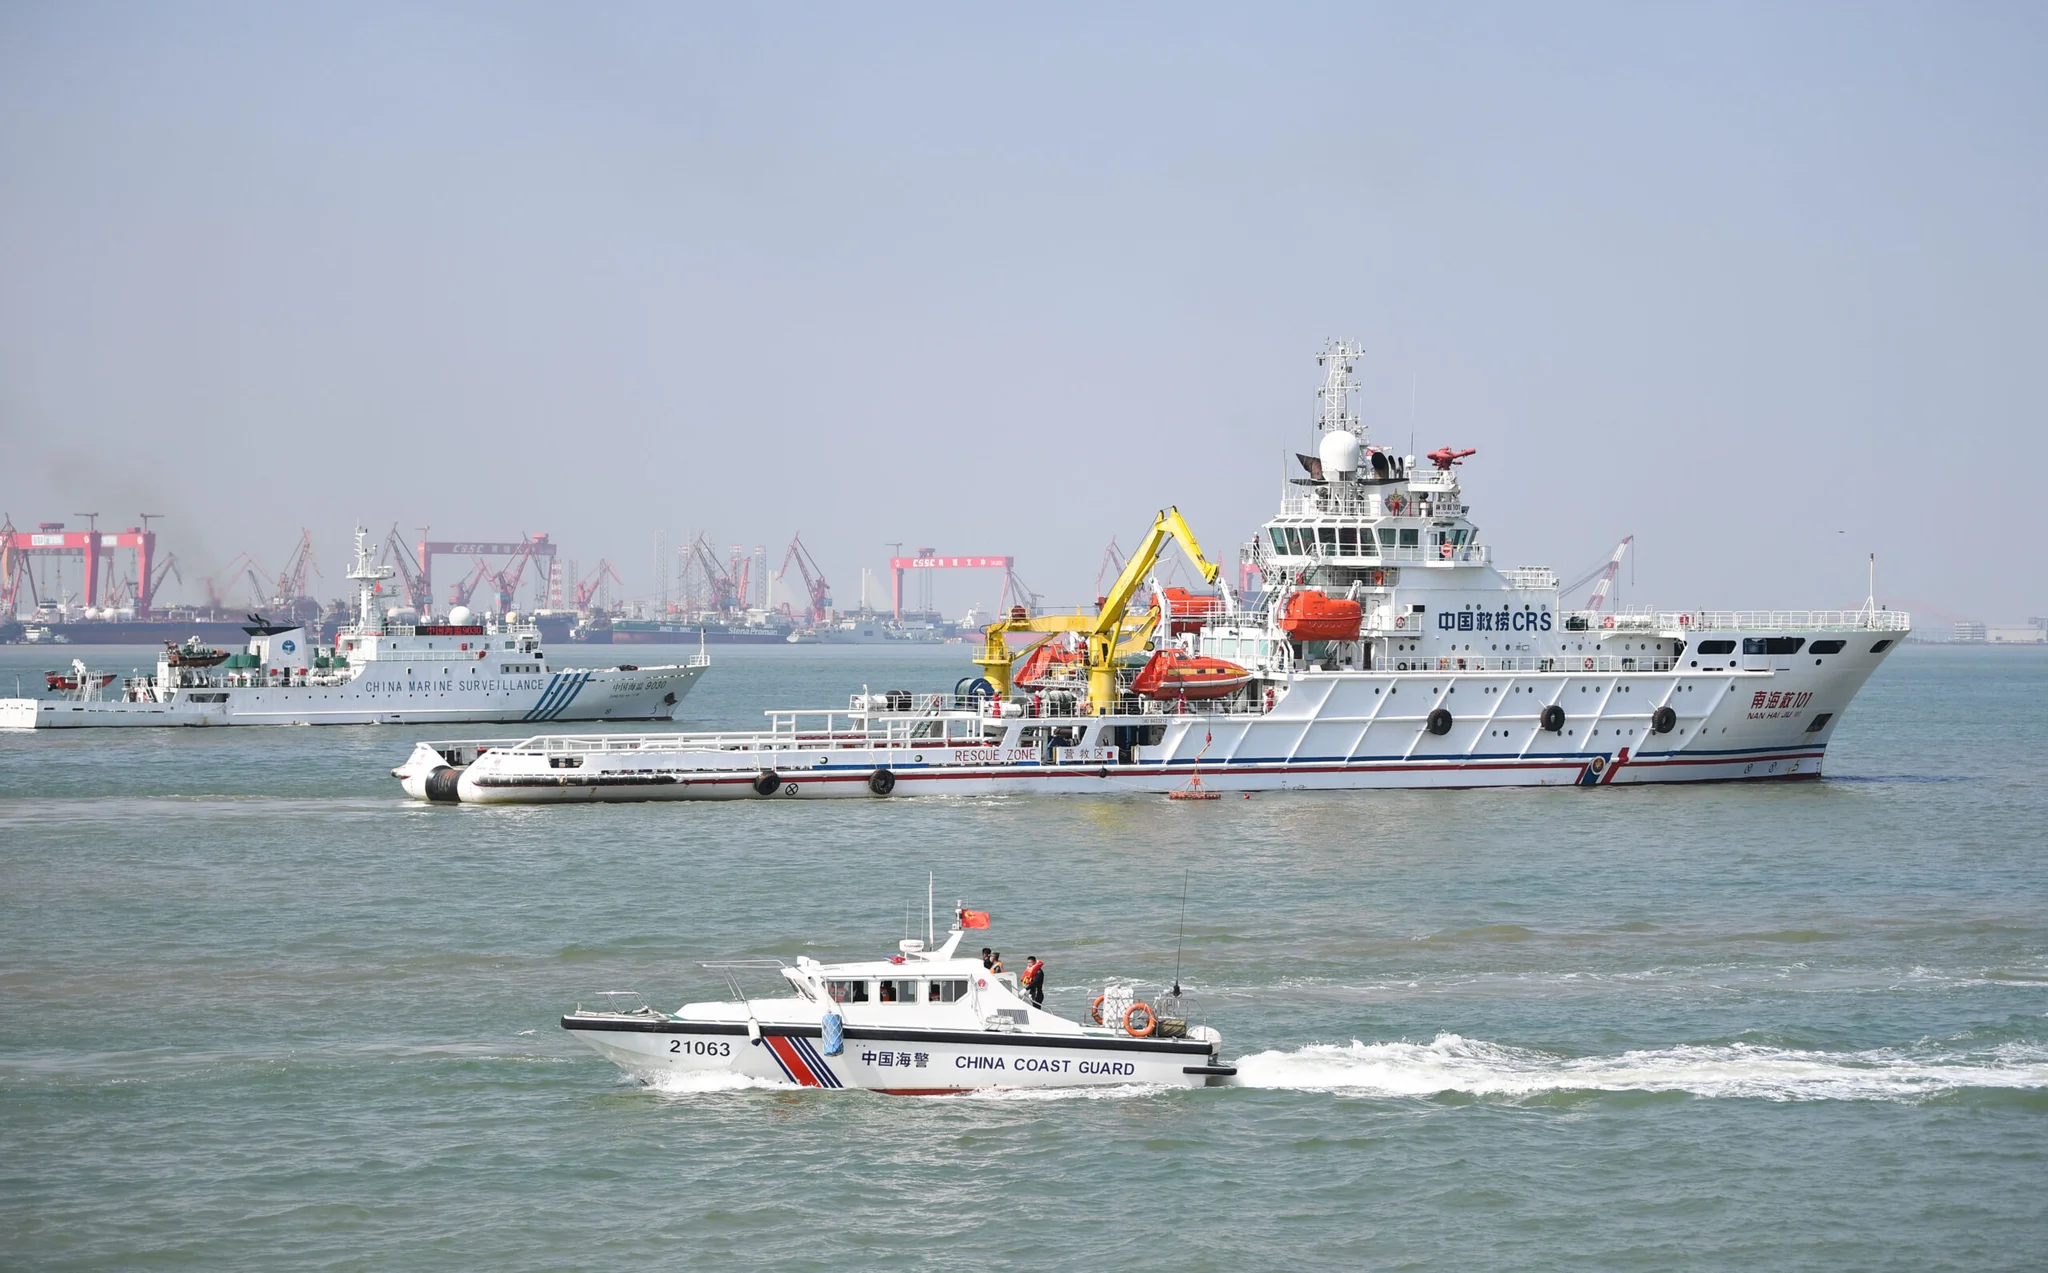 ทัพนักธรณีวิทยาจีน ขุดเจาะ 'ไหล่ทะเลจีนใต้' ทำสถิติความลึกครั้งใหม่